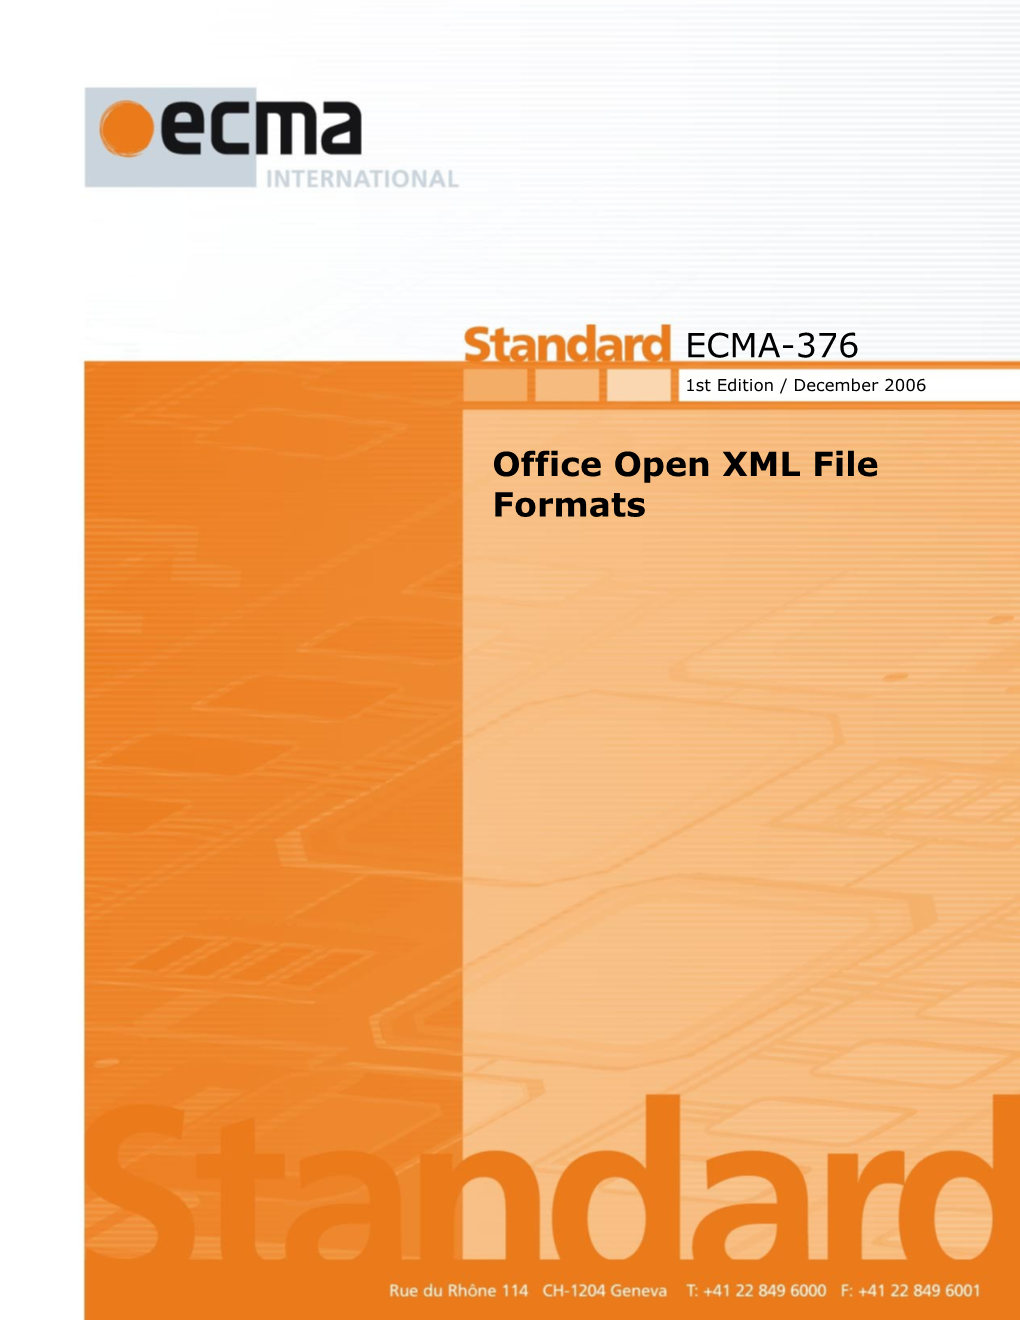 ECMA-376 Office Open XML File Formats